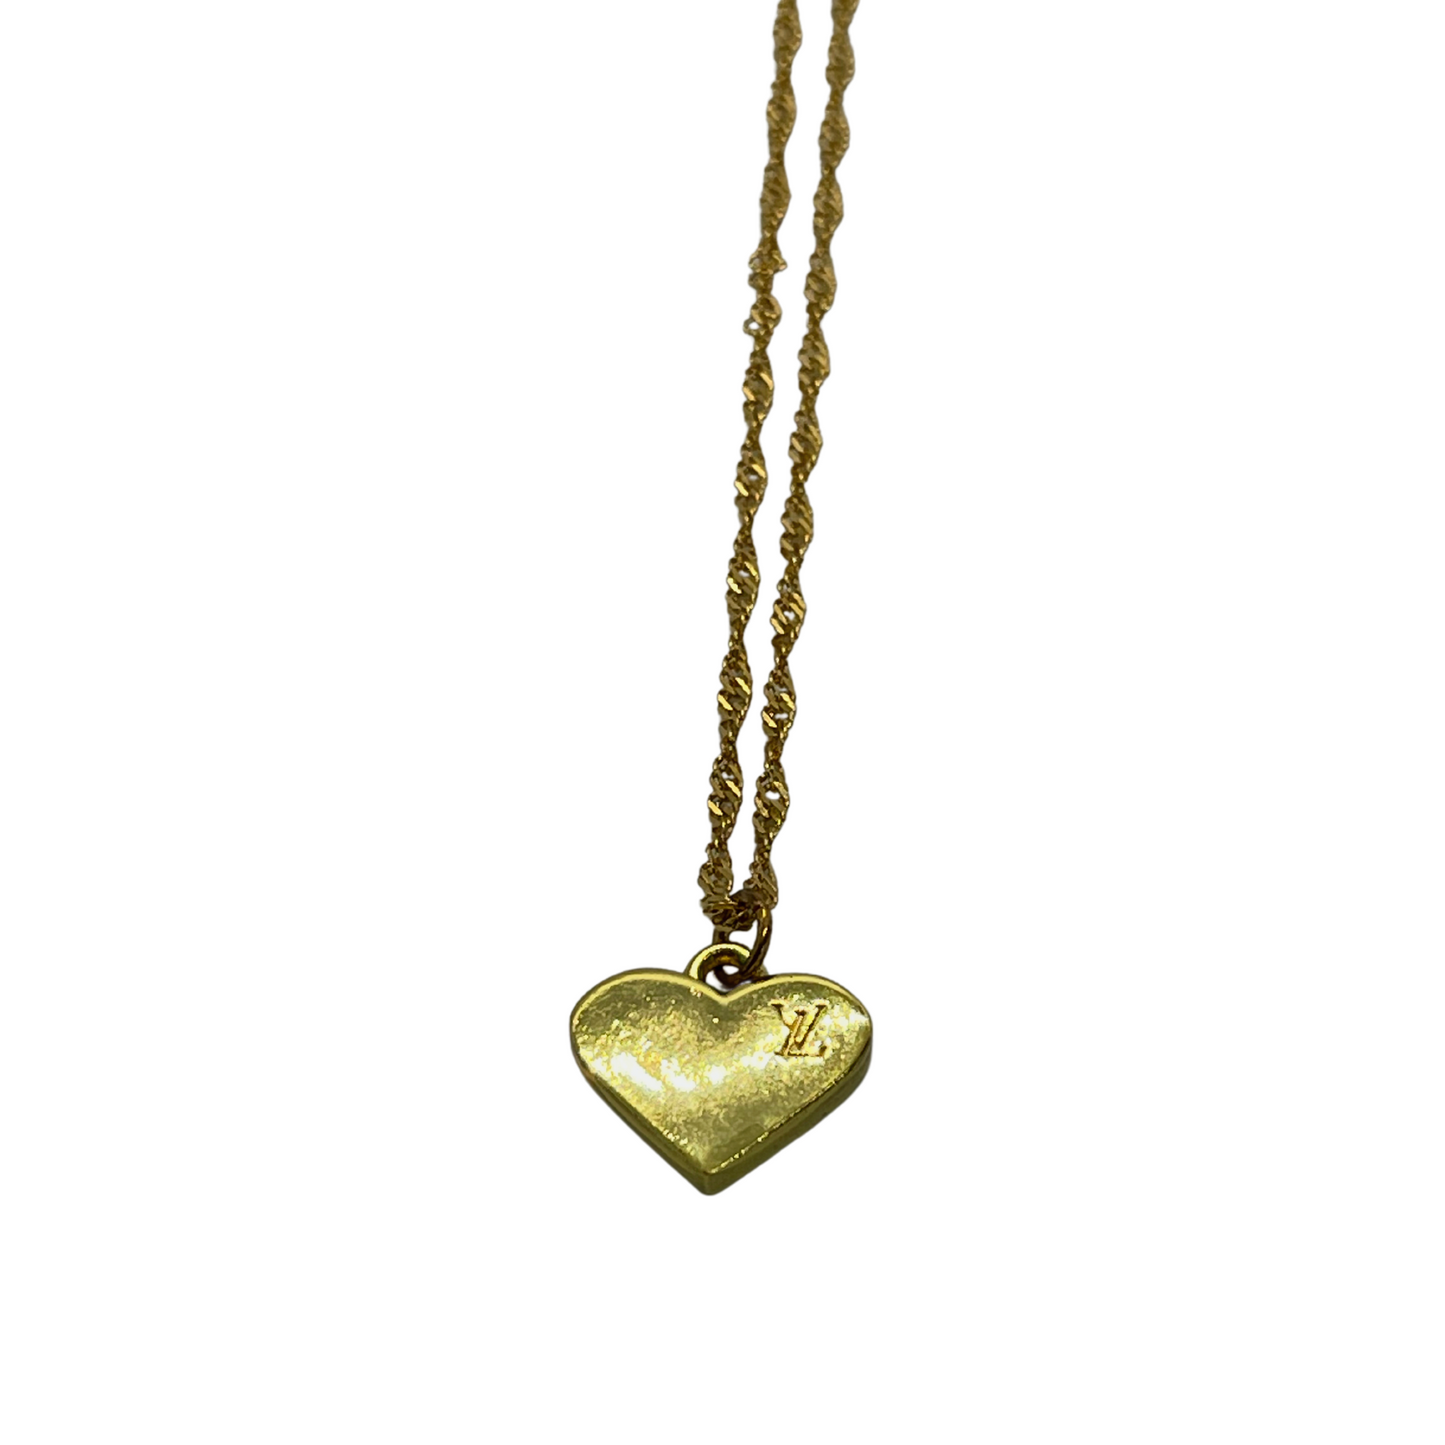  Authentic Louis Vuitton Heart Pendant